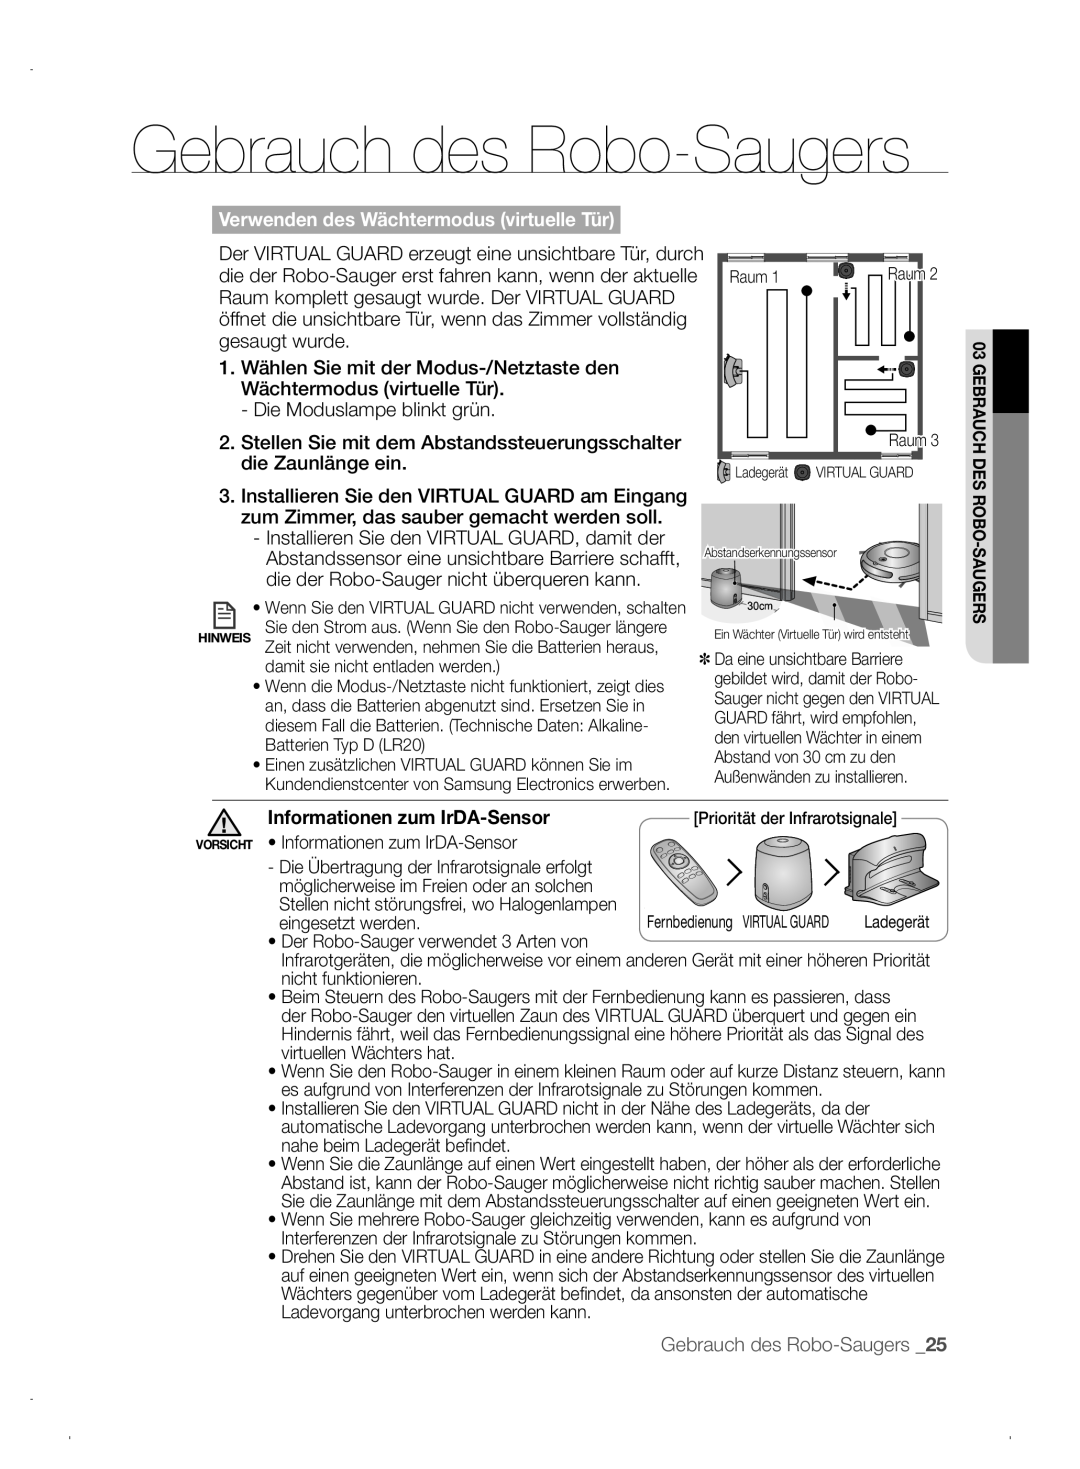 Samsung VCR8845T3A/XEO Gebrauch des Robo-Saugers, Verwenden des Wächtermodus virtuelle Tür, Informationen zum IrDA-Sensor 